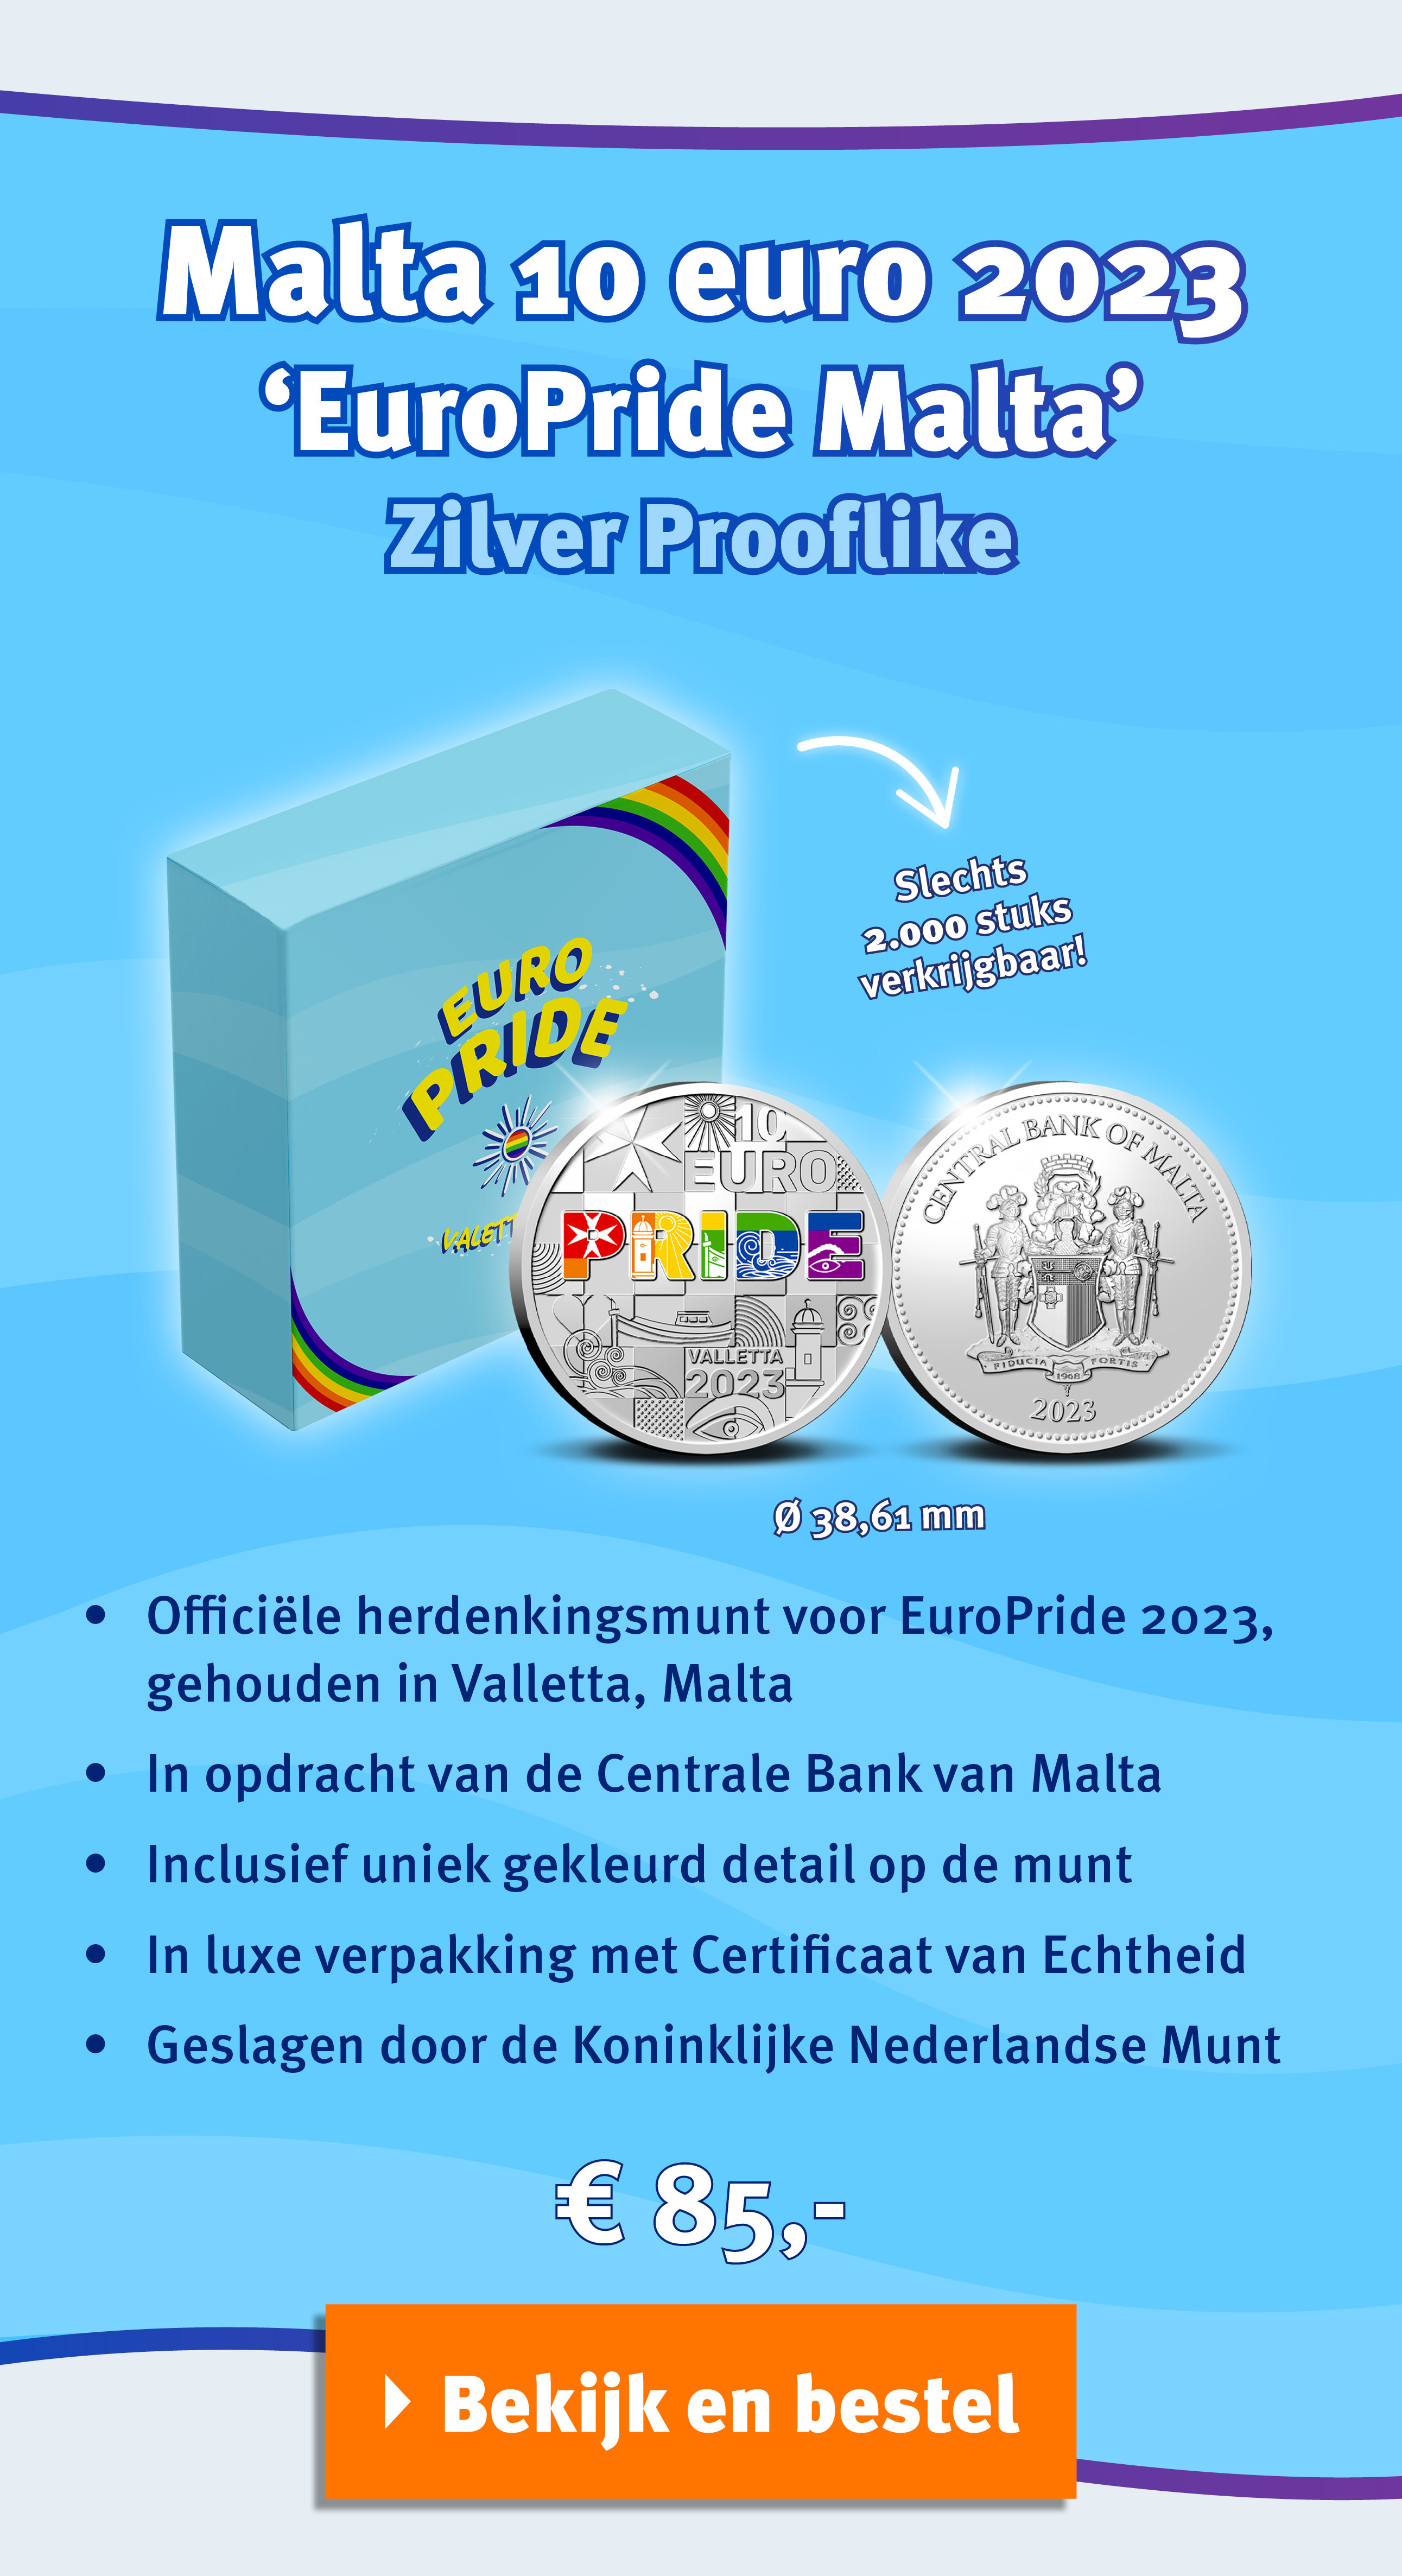 Bekijk en bestel: Malta 10 euro 2023 ‘EuroPride Malta’ Zilver Prooflike